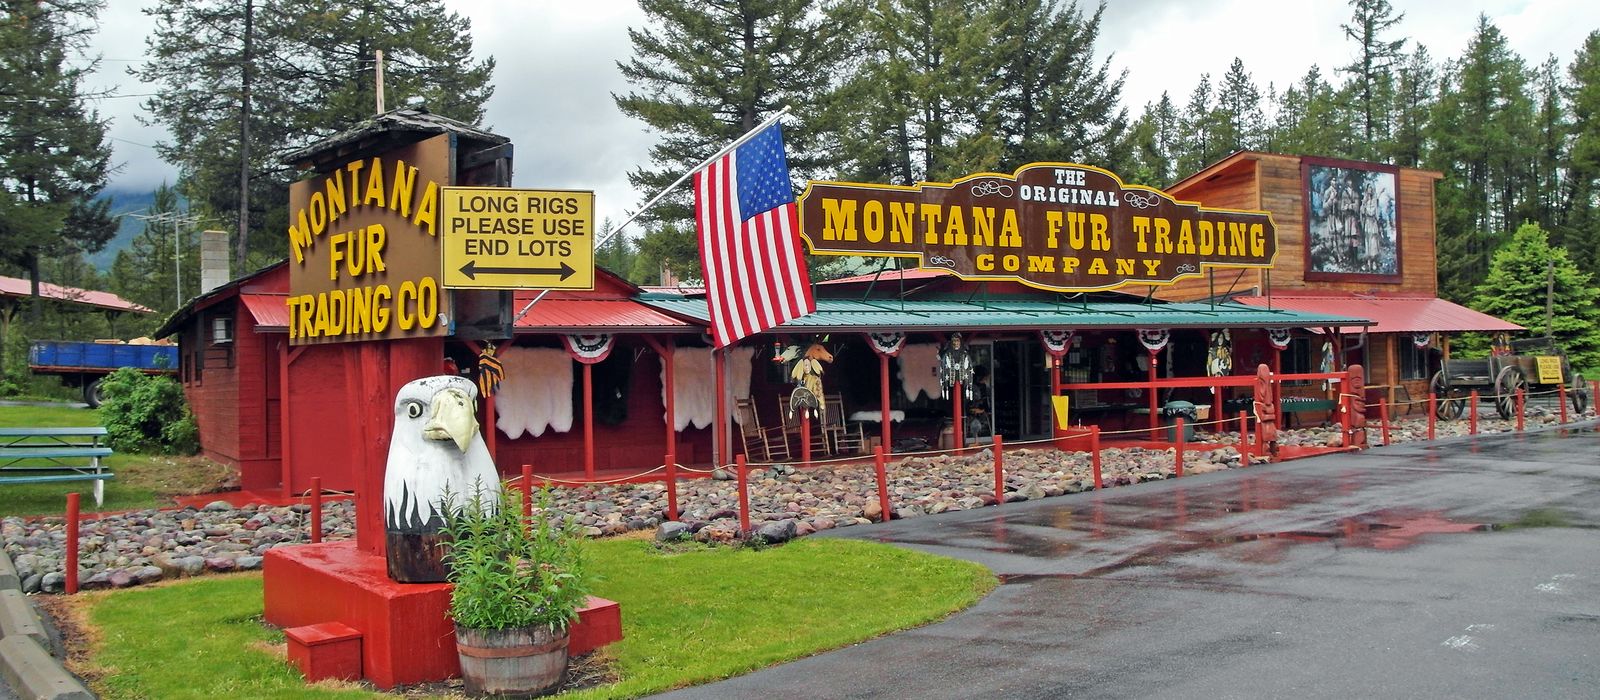 The Original Montana Fur Trading Company